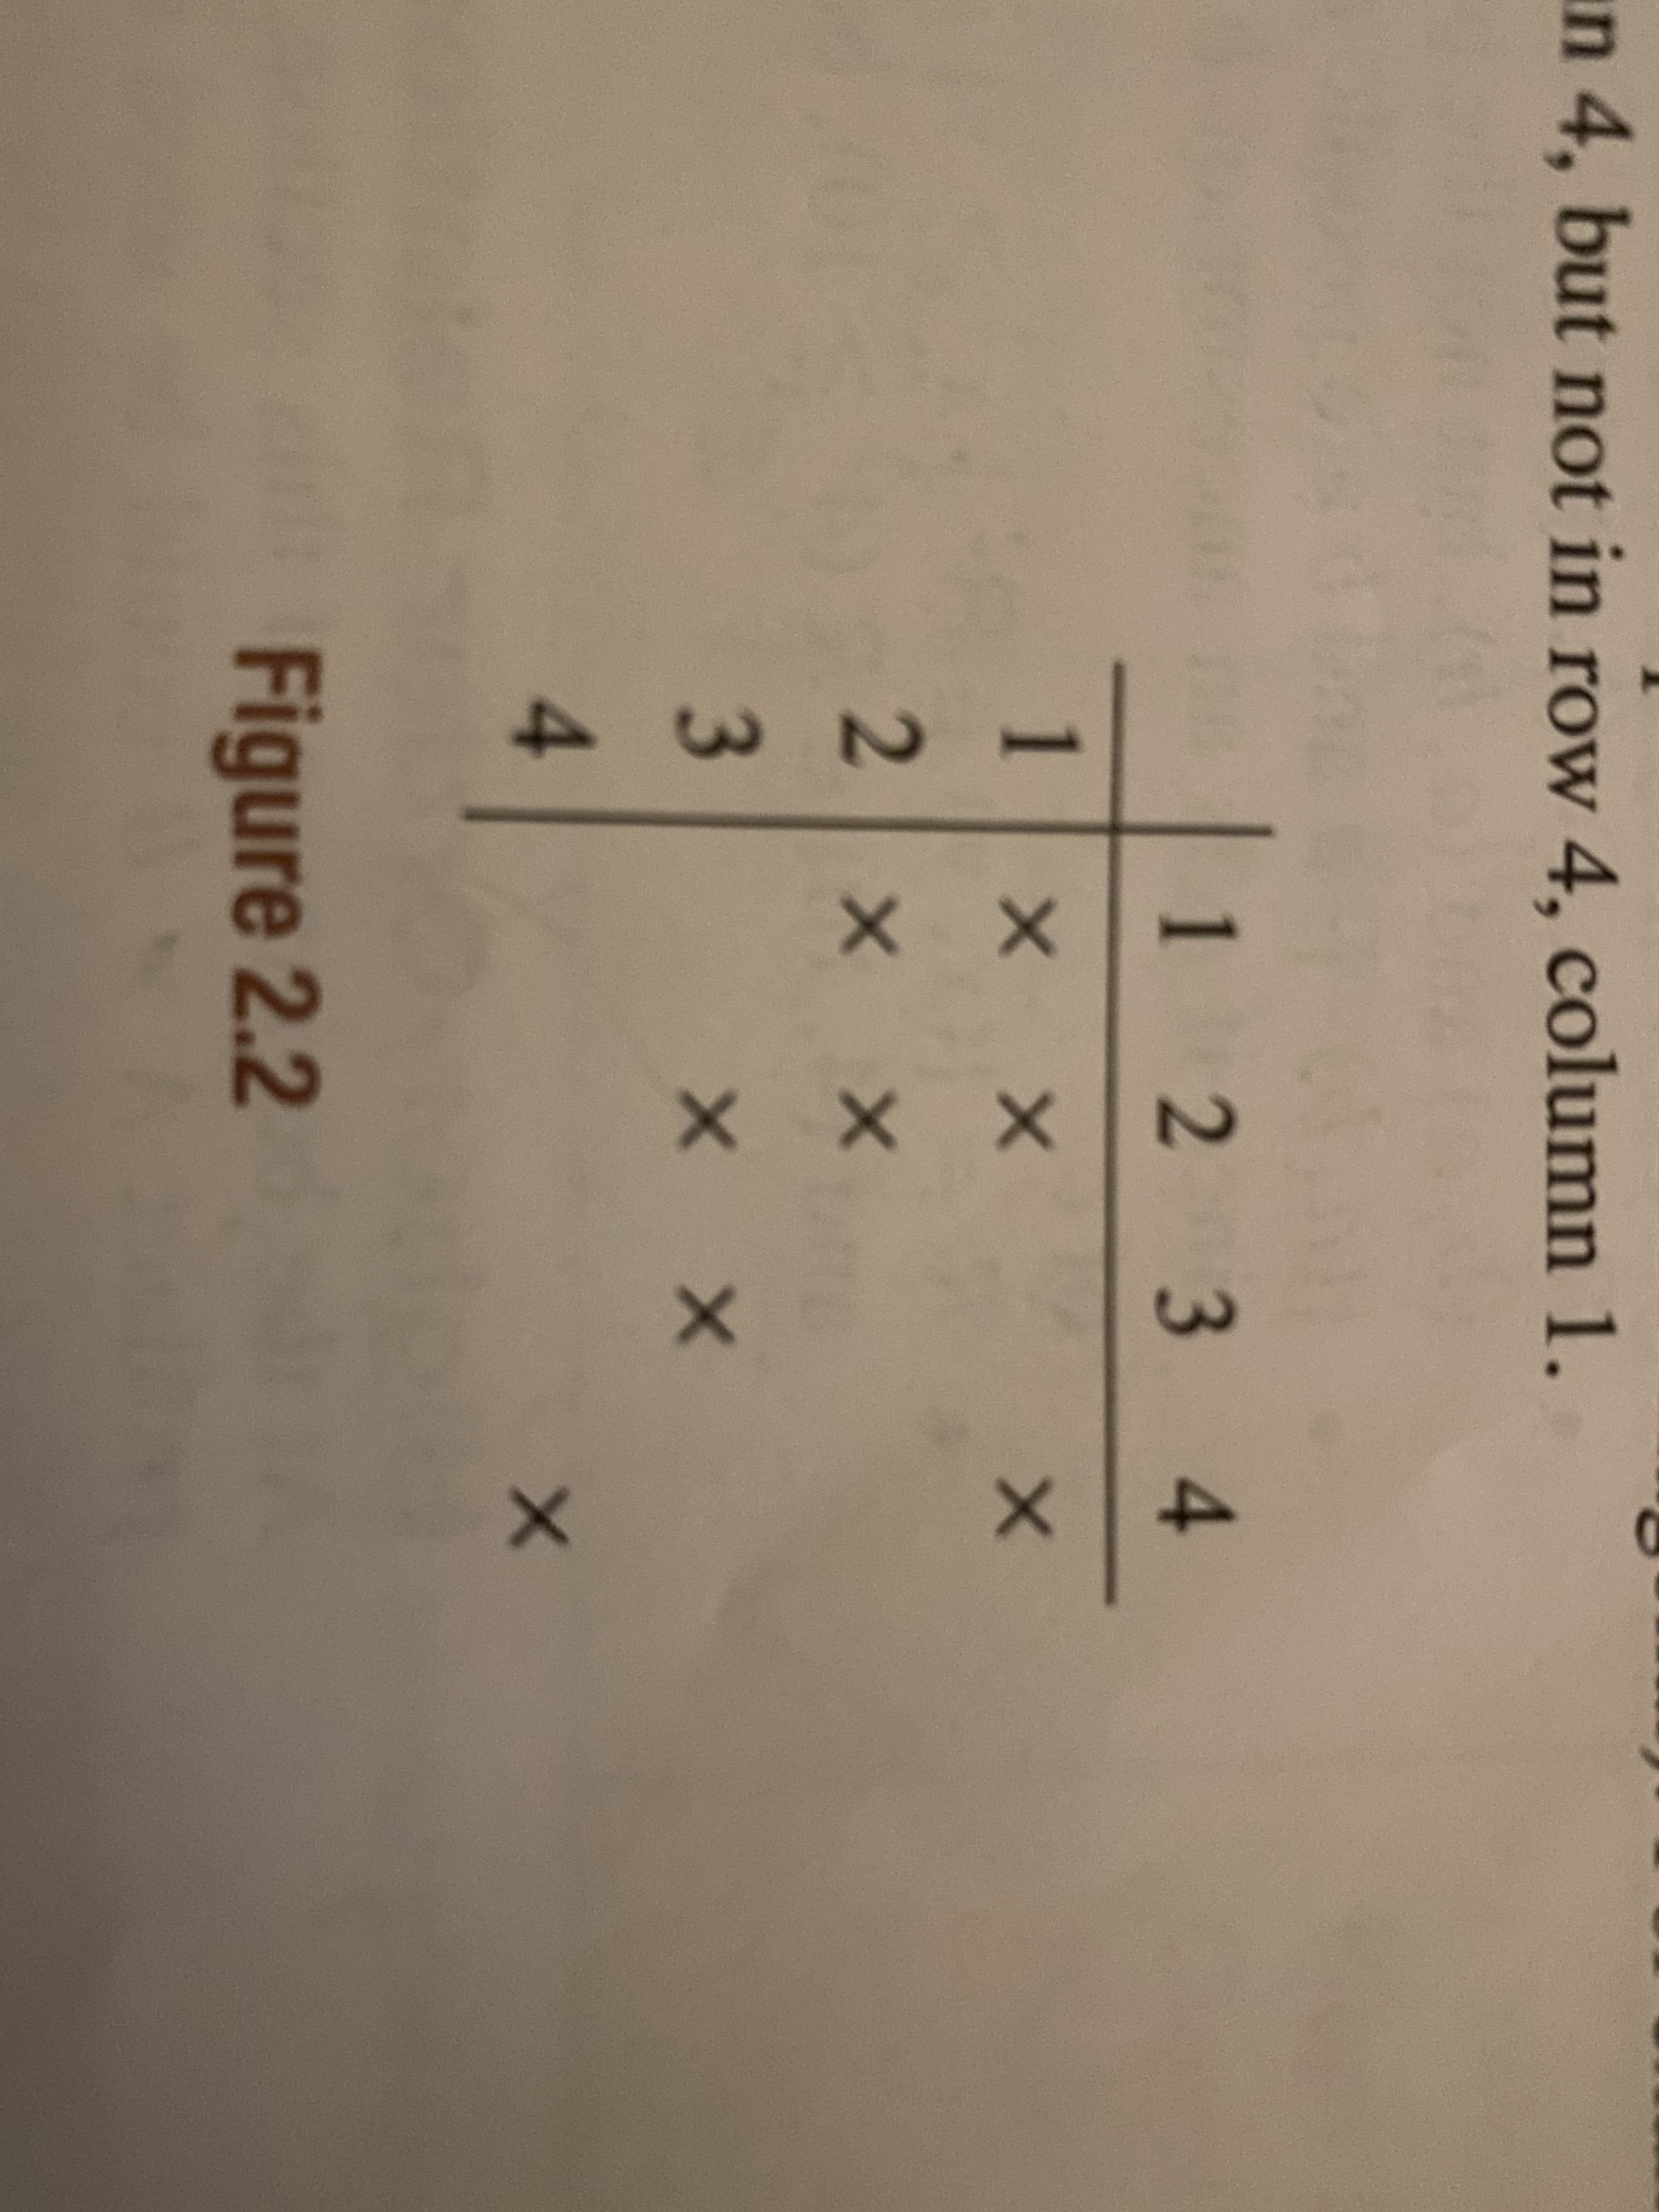 an 4, but not in row 4, column 1.
1234
1 x X
X X
Figure 2.2
23
4.
